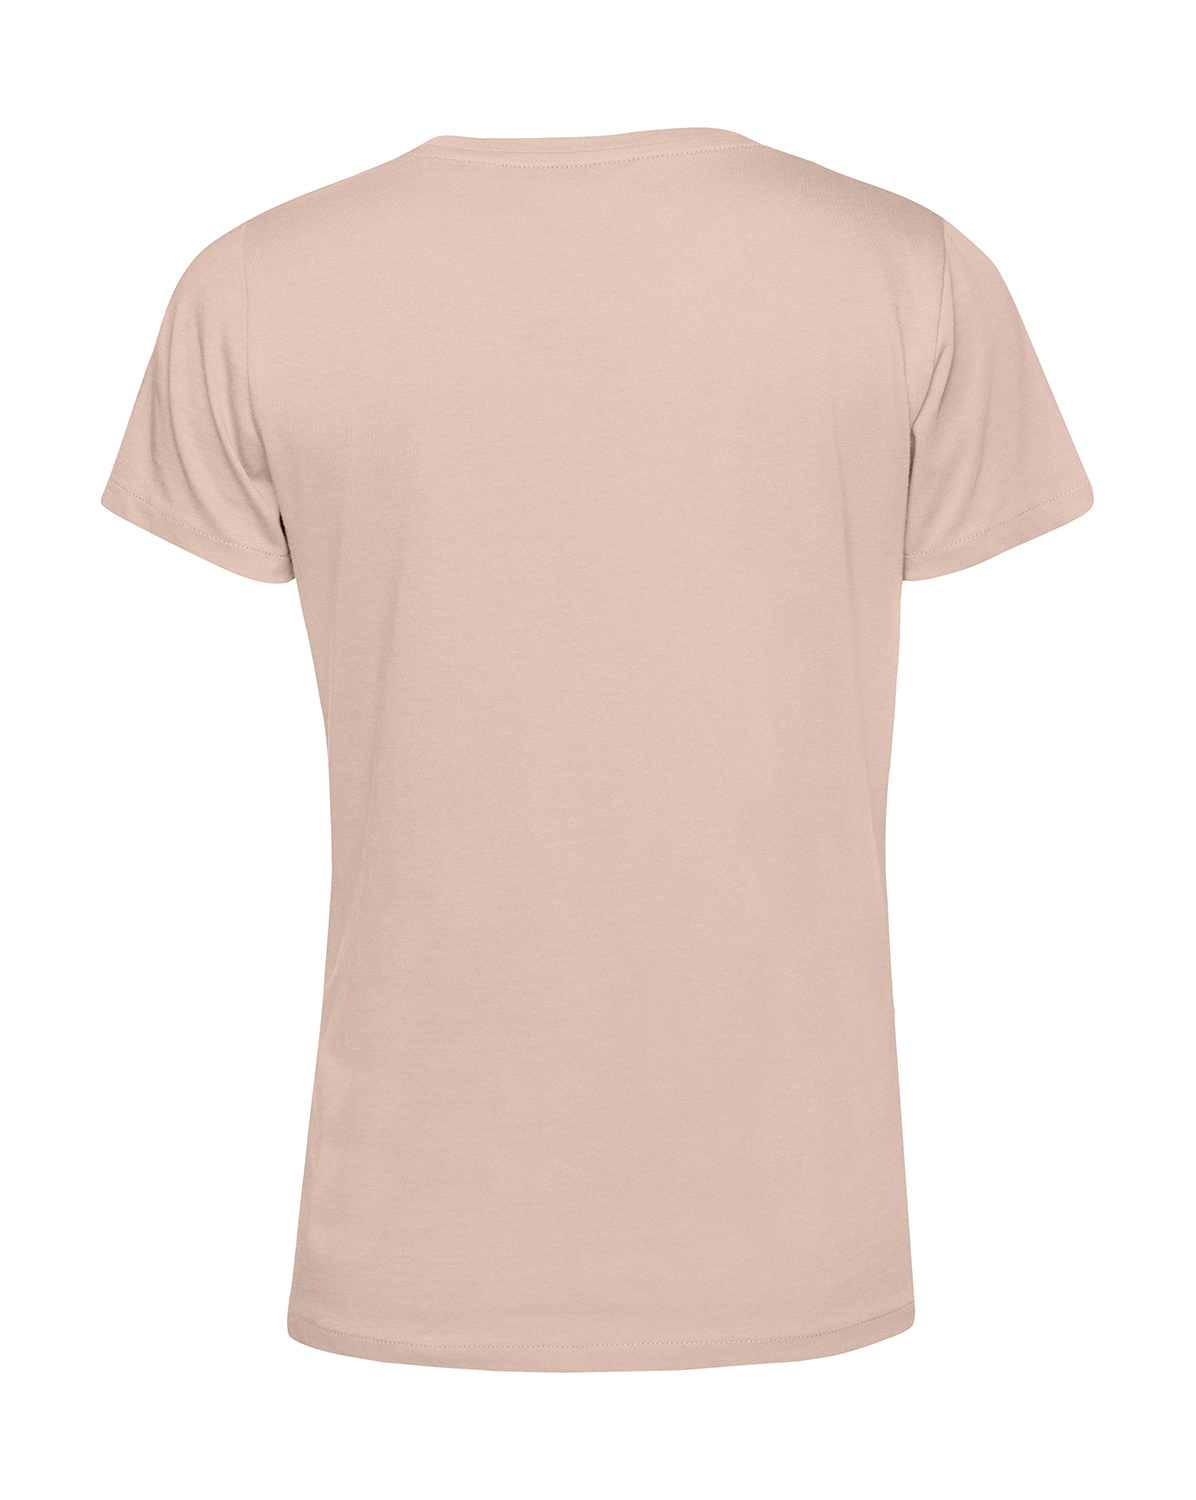 Nachhaltiges T-Shirt Damen 2Takt - Trotz Mauerfall und Wende S50